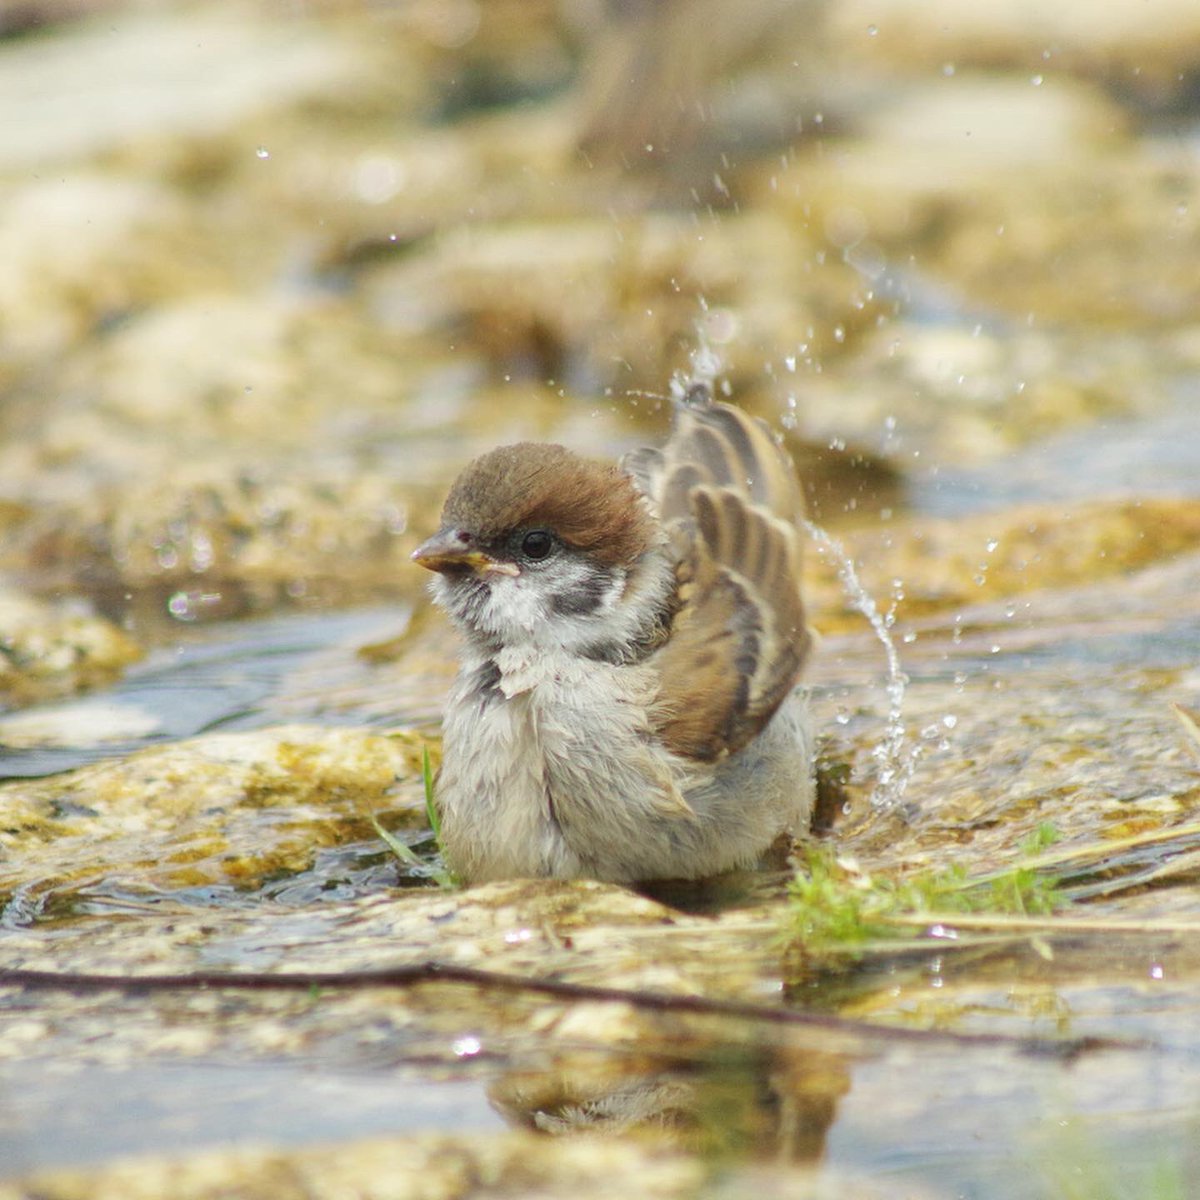 今日も子チュンが頑張って水浴びの練習してたよ

#雀 #スズメ #すずめ #sparrow #鳥 #小鳥 #野鳥 #ちゅん活 #スズメ写真集 #bird